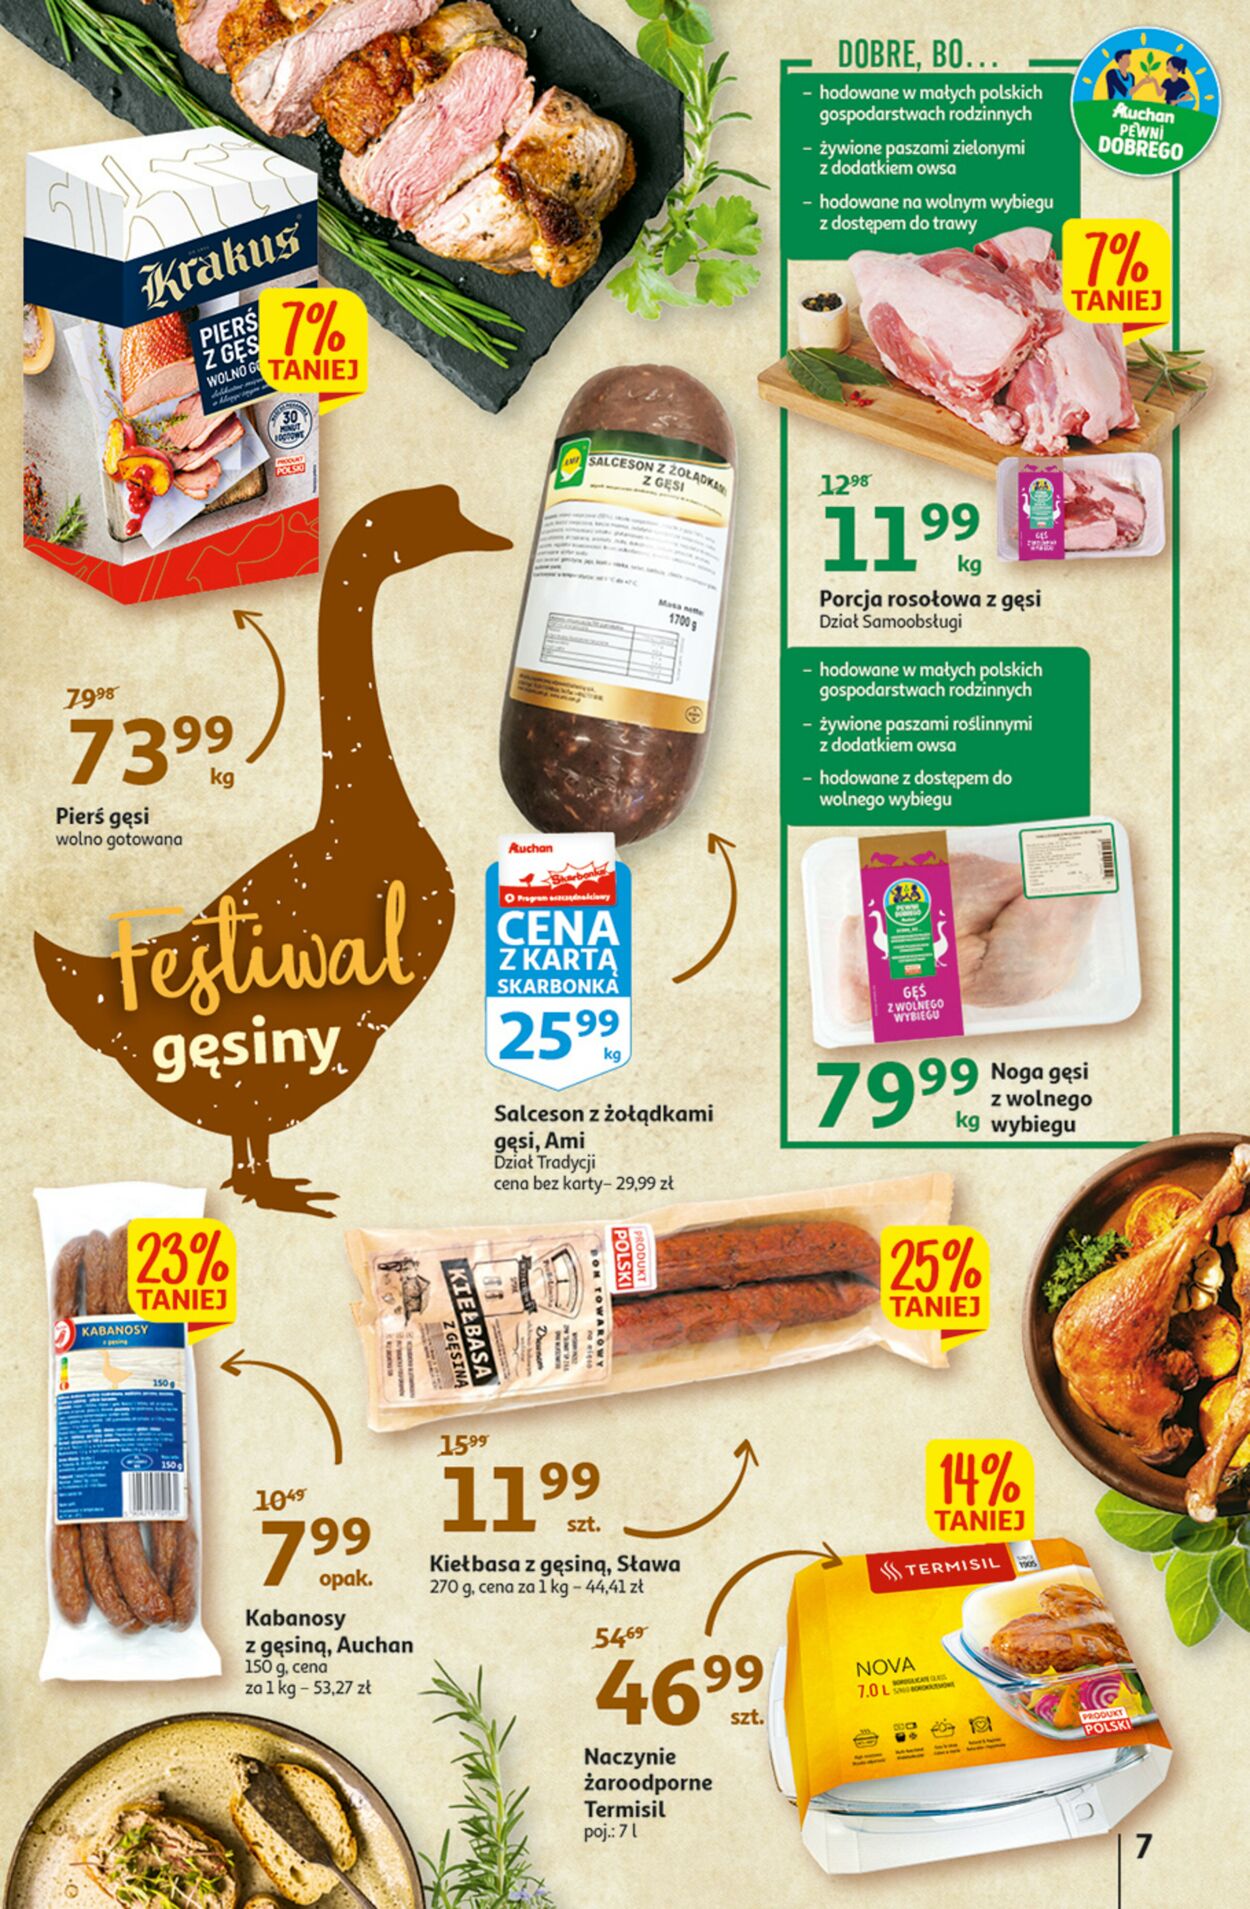 Gazetka promocyjna Auchan - 03.11-09.11.2022 (Strona 7)